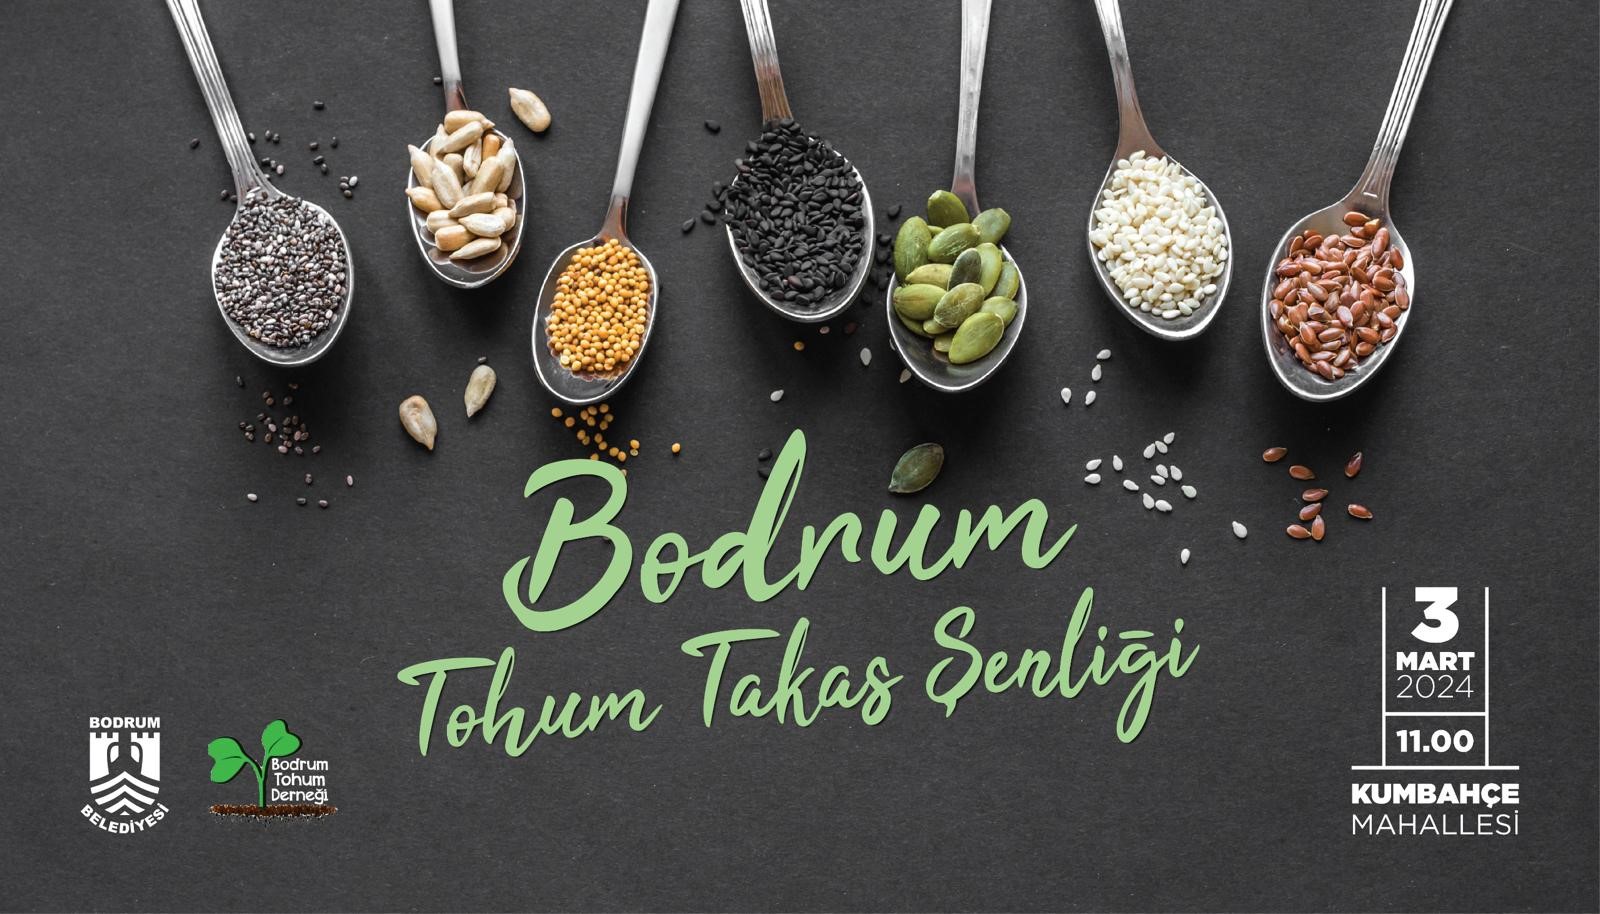 Bodrum'da   3 Mart’ta Tohum Takas Şenliği düzenlenecek